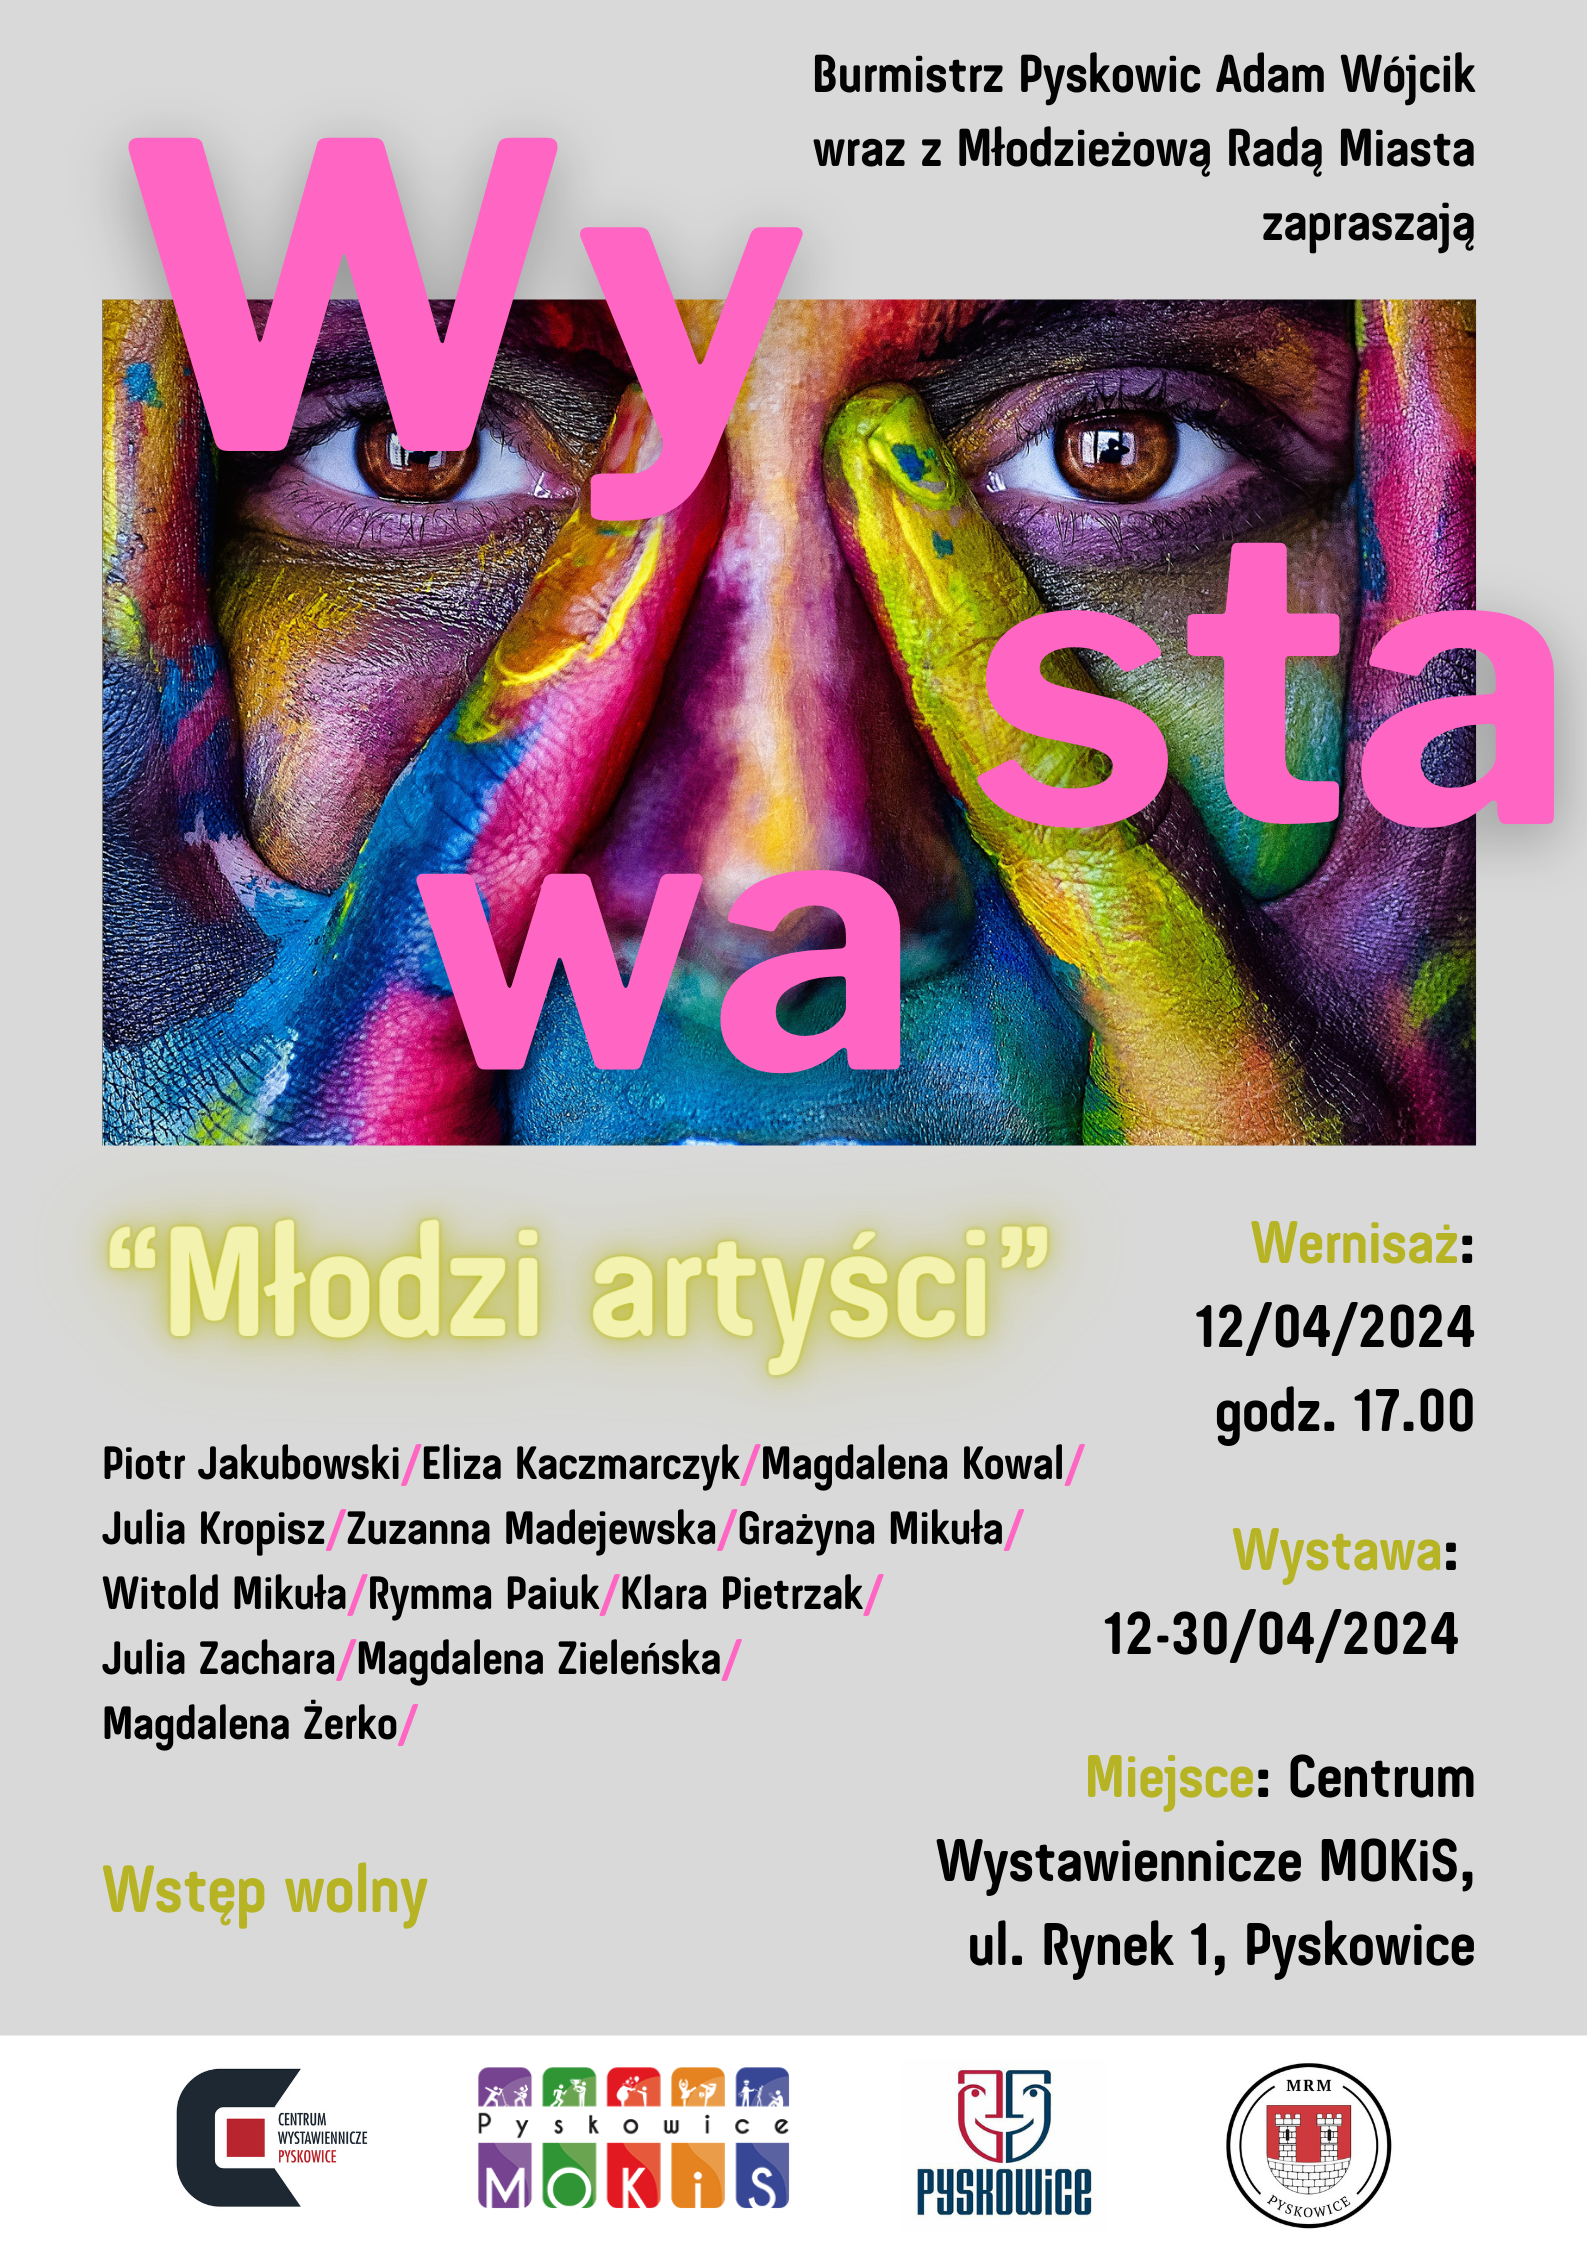 Plakat promujący wystawę "Młodzi artyści"